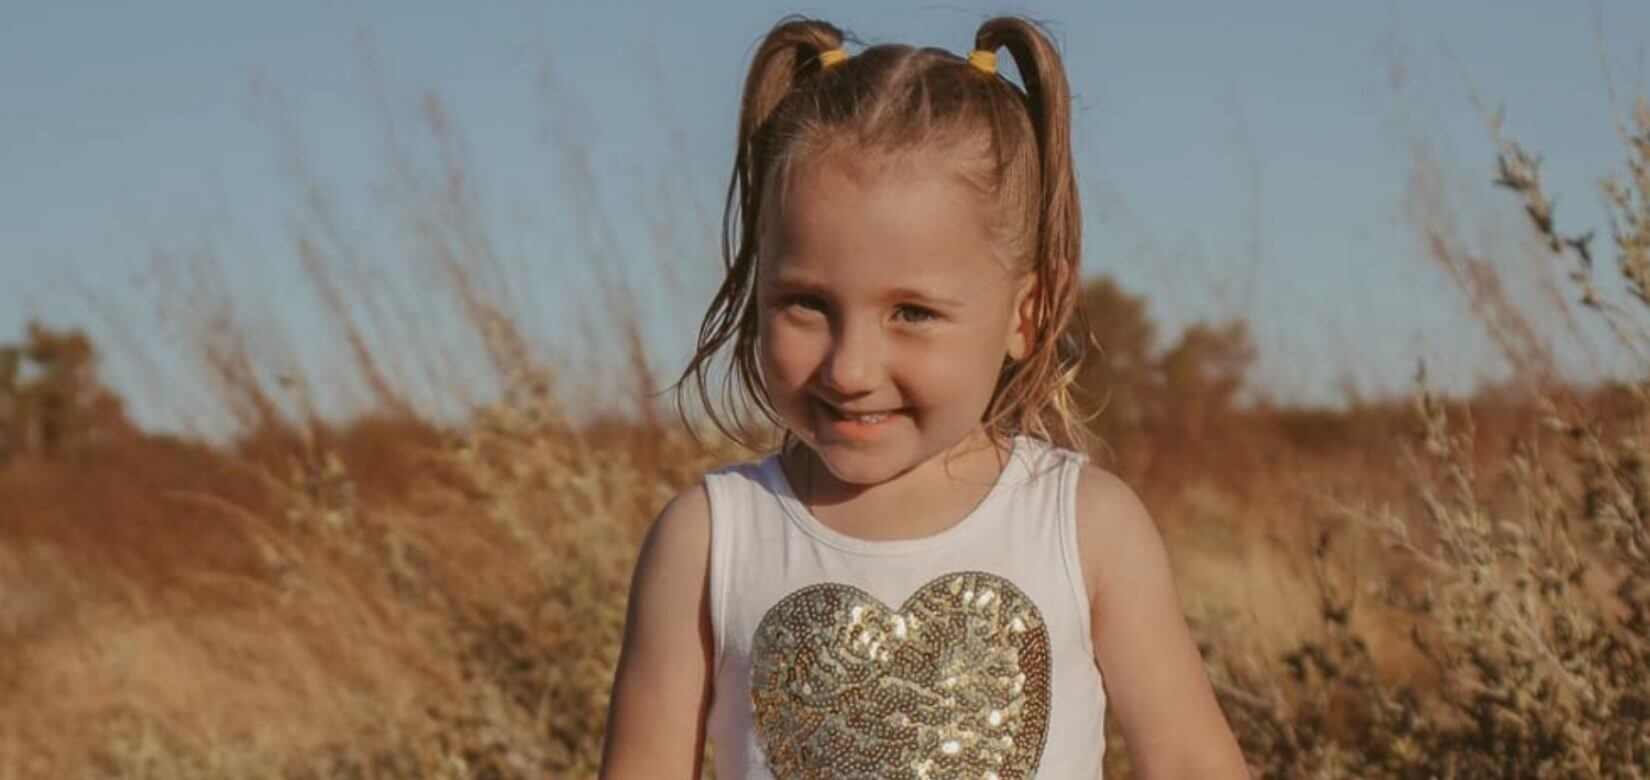 Βρέθηκε ζωντανή η 4χρονη Κλίο στην Αυστραλία - Ήταν κλειδωμένη μέσα σ' ένα σπίτι